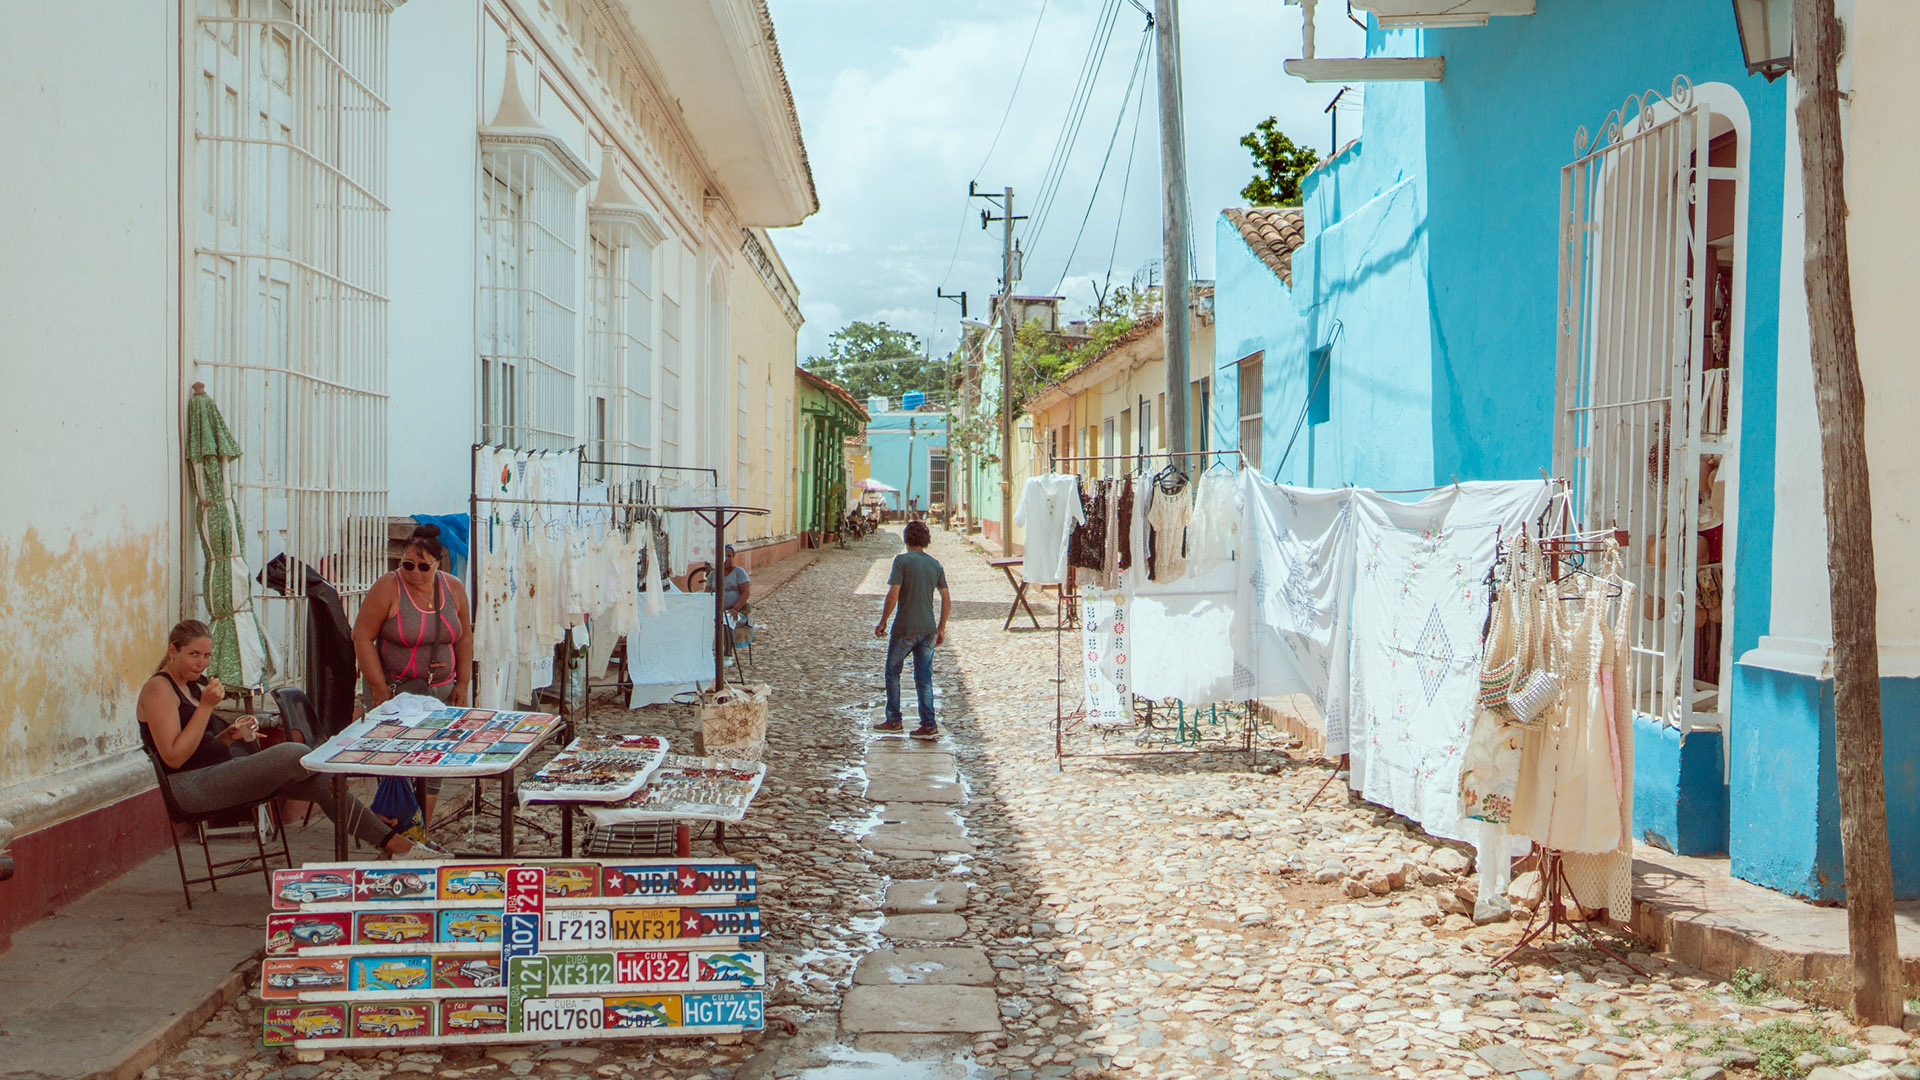 street vendor sin trinidad cuba